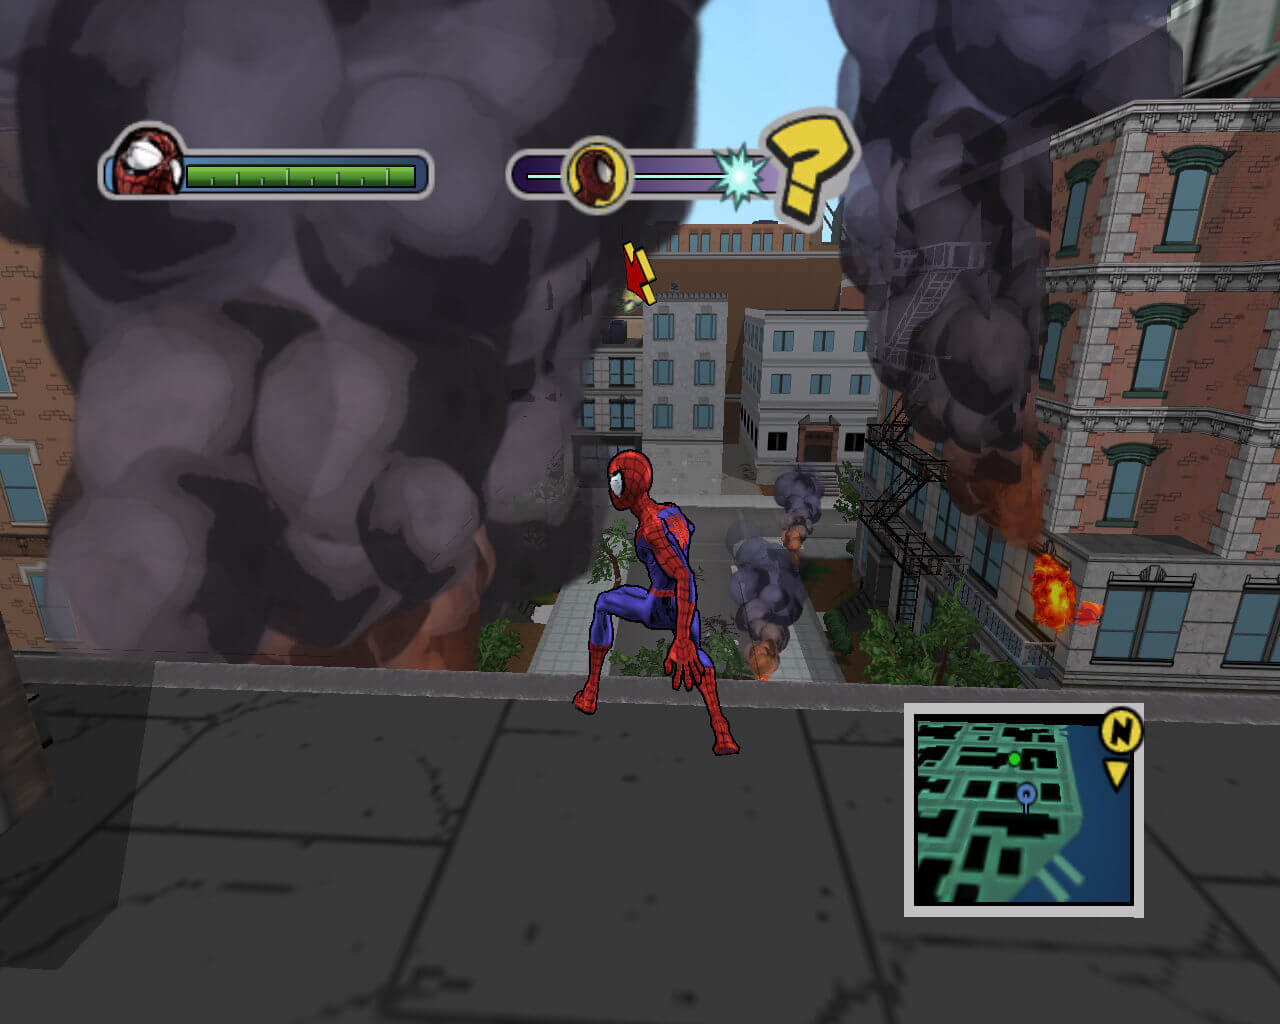 Image 1 - Ultimate Spider-Man MOD for Spider-Man 2 - Mod DB